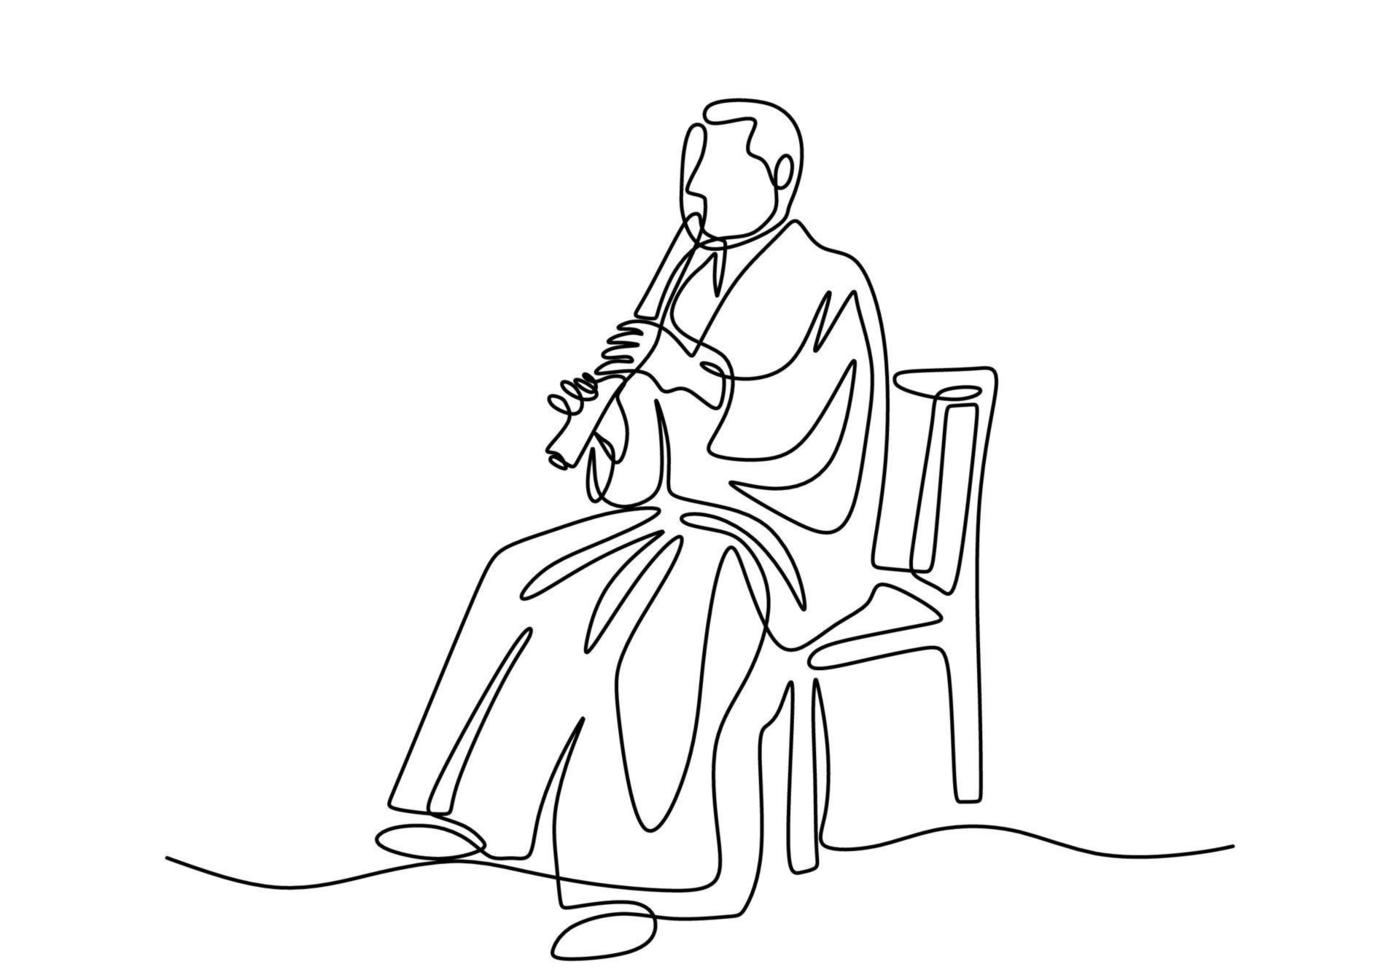 un disegno a linea singola continua di un uomo con flauto shakuhachi, musica tradizionale del giappone. vettore